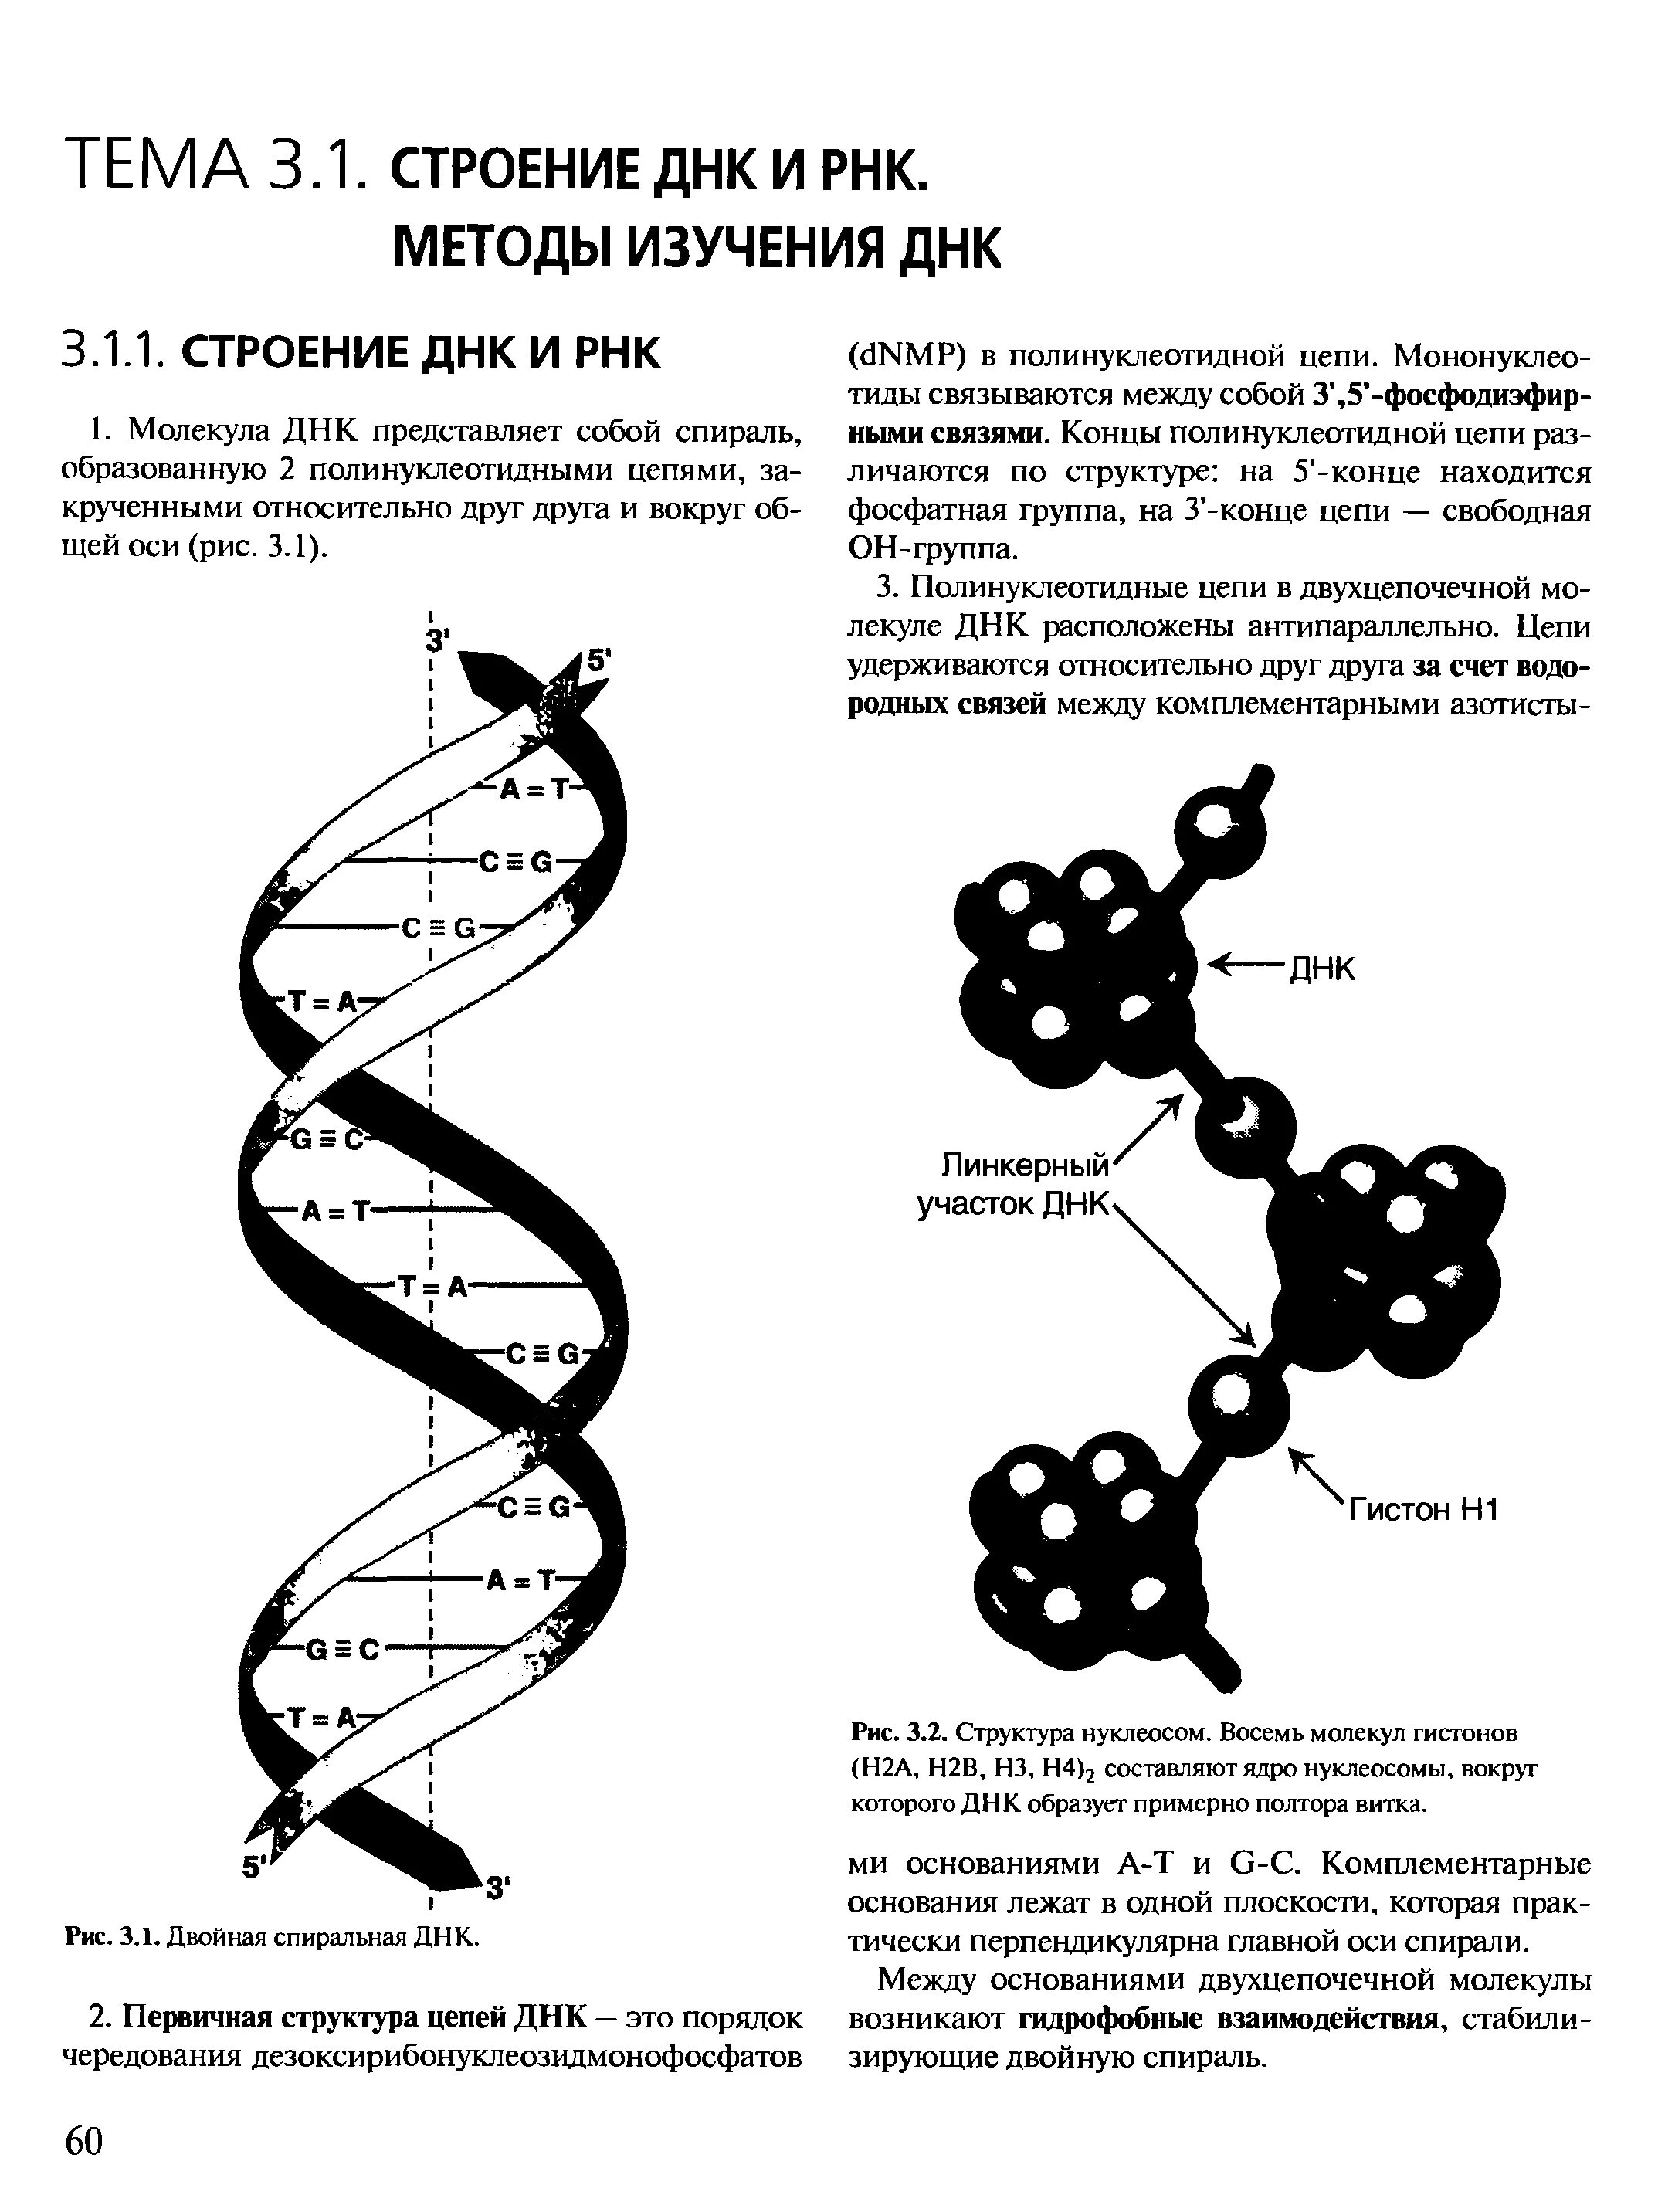 Двойная спиральная структура ДНК. Третичная структура ДНК, строение нуклеосом.. Структура двойной спирали ДНК. Двойная спираль ДНК белки гистоны.